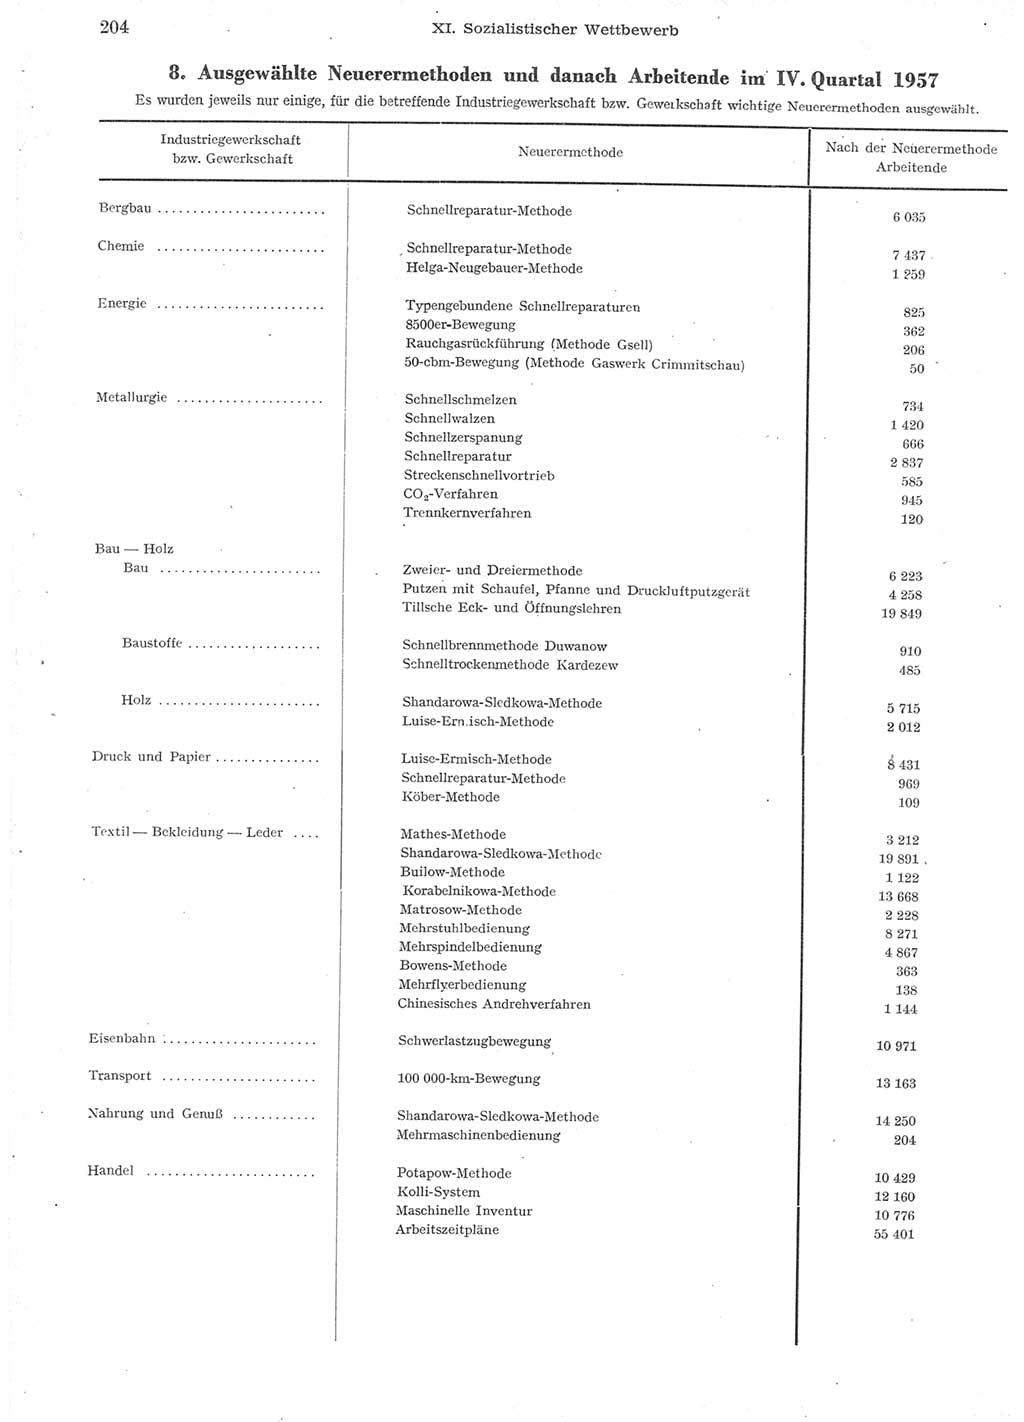 Statistisches Jahrbuch der Deutschen Demokratischen Republik (DDR) 1957, Seite 204 (Stat. Jb. DDR 1957, S. 204)